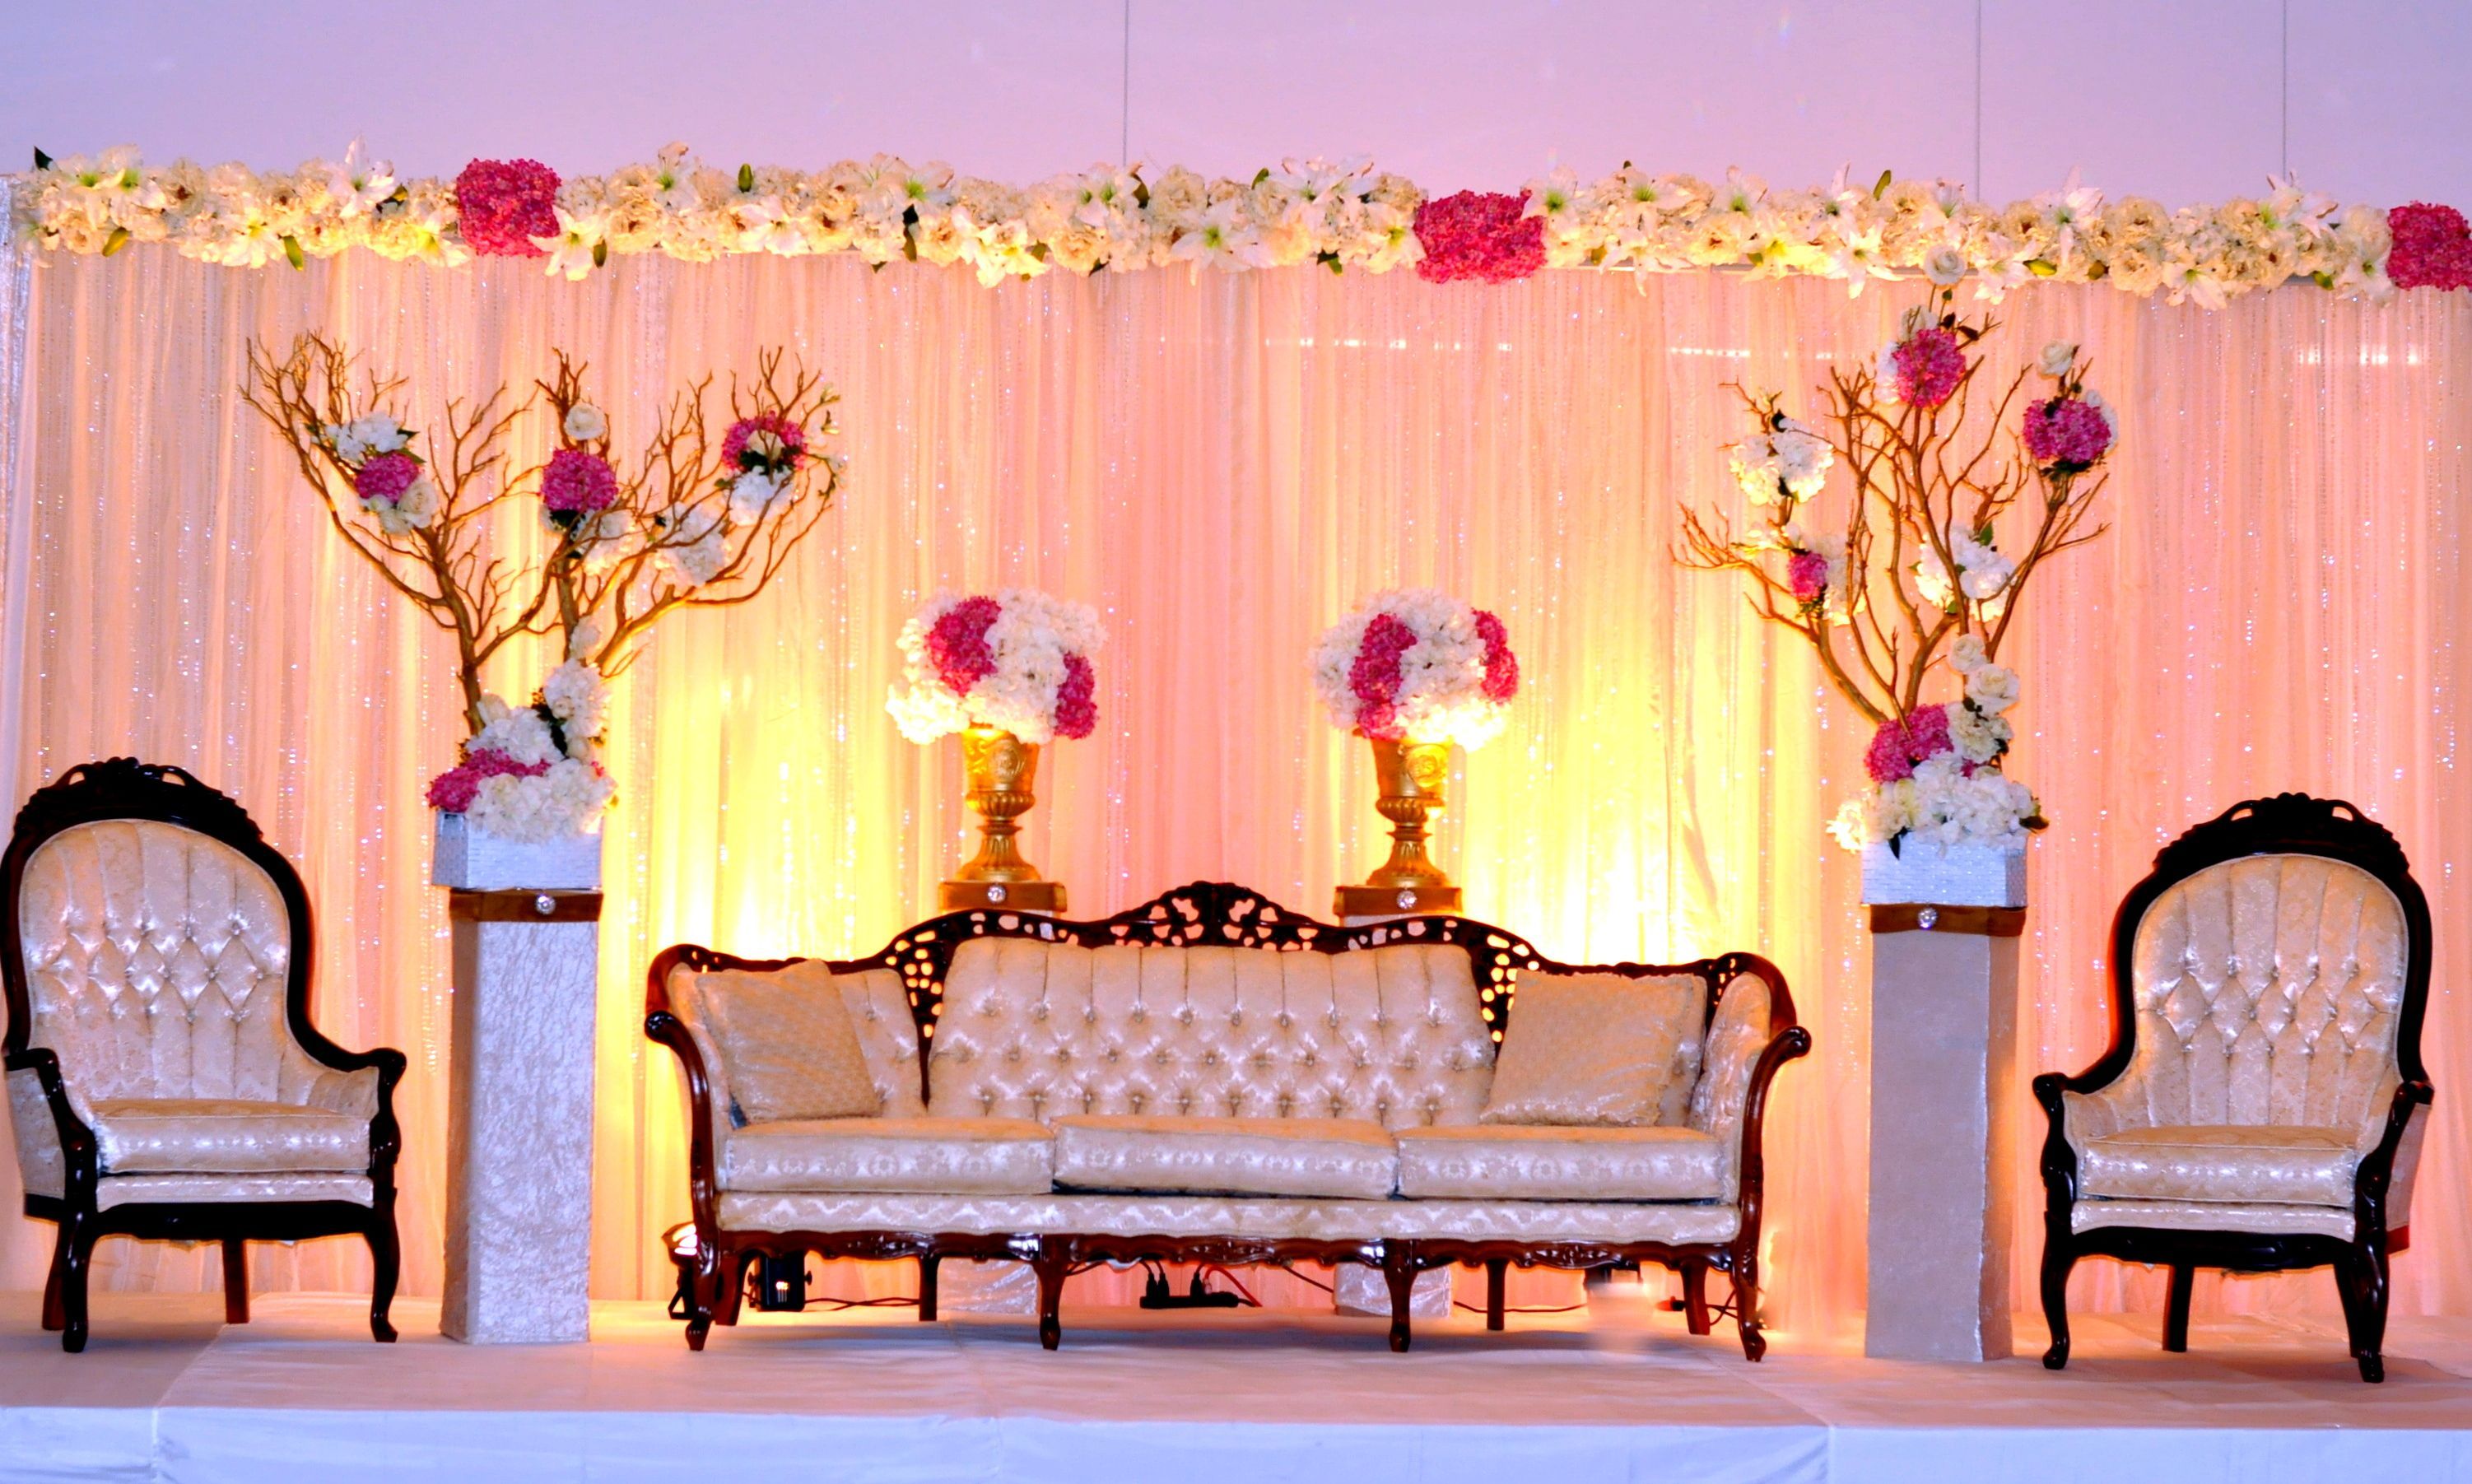 Hình nền sân khấu đám cưới đóng một vai trò quan trọng trong việc tạo nên không gian hoàn hảo cho đám cưới. Hãy cùng xem những hình ảnh độc đáo và tinh tế nhất về hình nền sân khấu đám cưới được chúng tôi thực hiện.